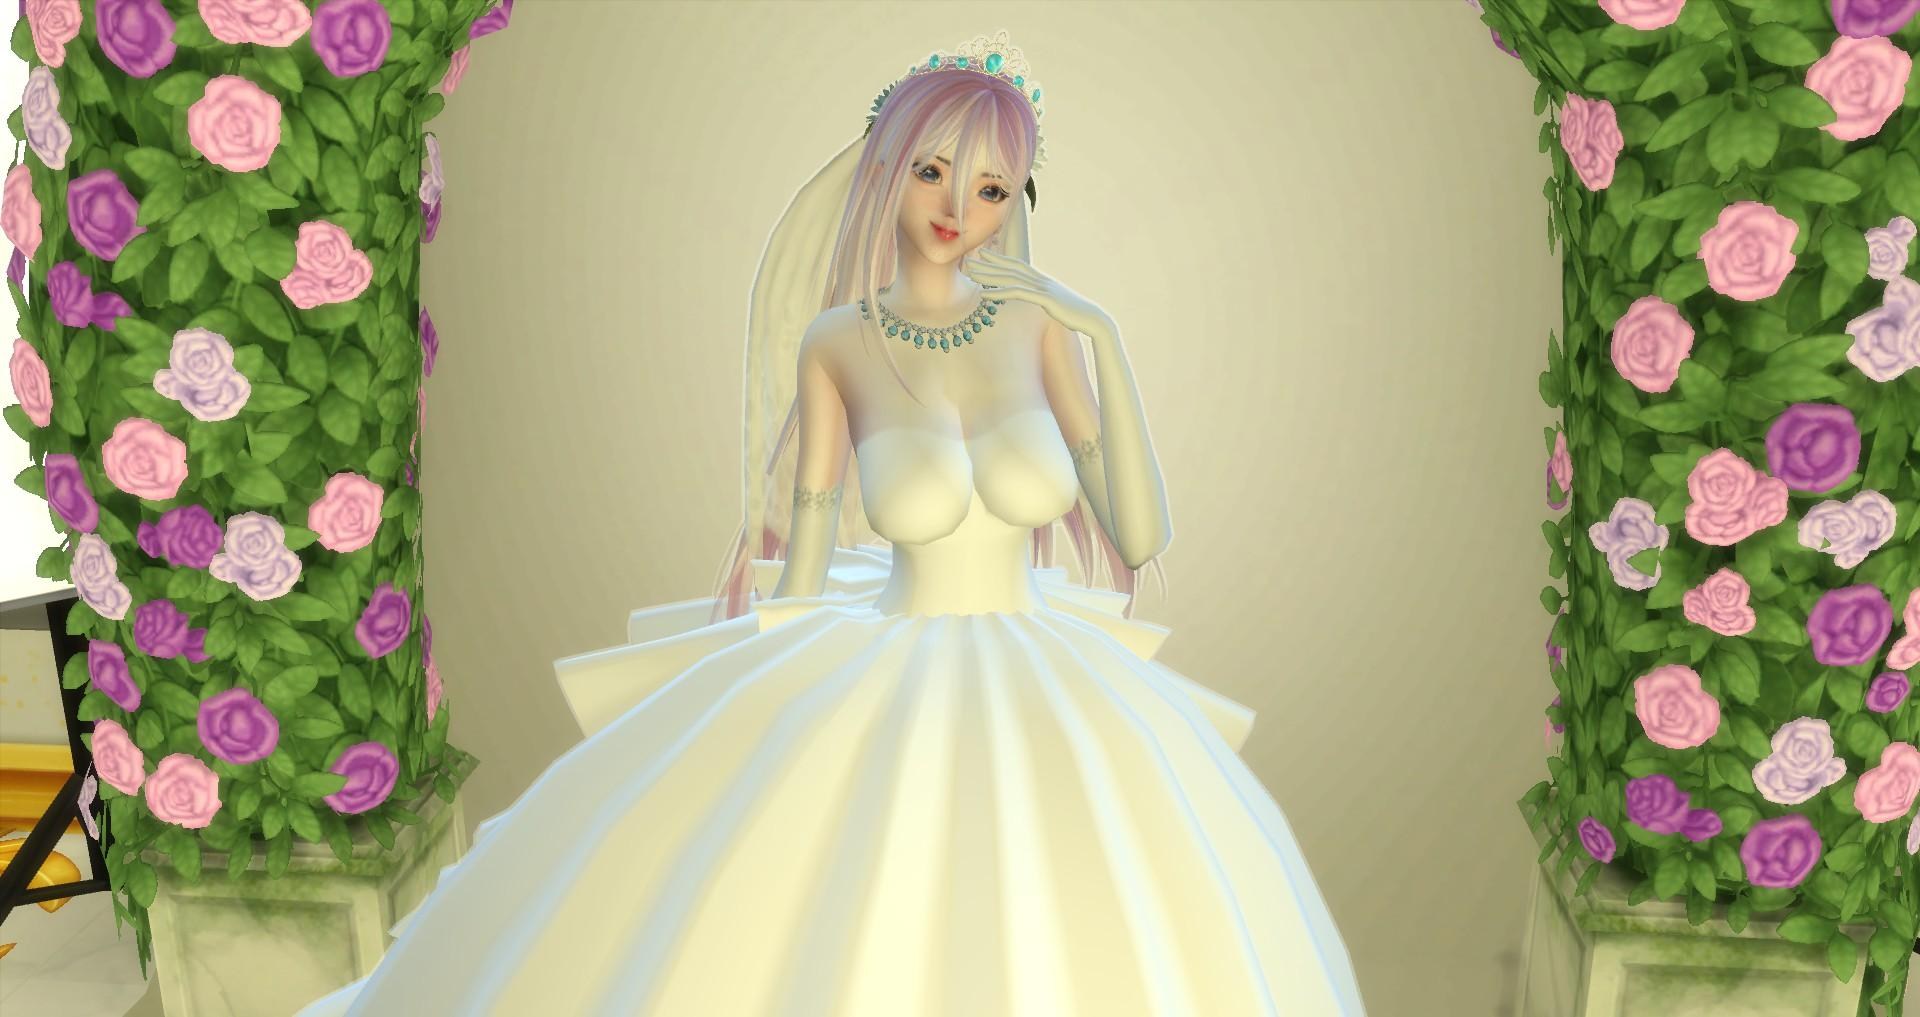 其他 Sims 分享仿製作品 公主戀人 Princess Lover 模擬市民系列哈啦板 巴哈姆特